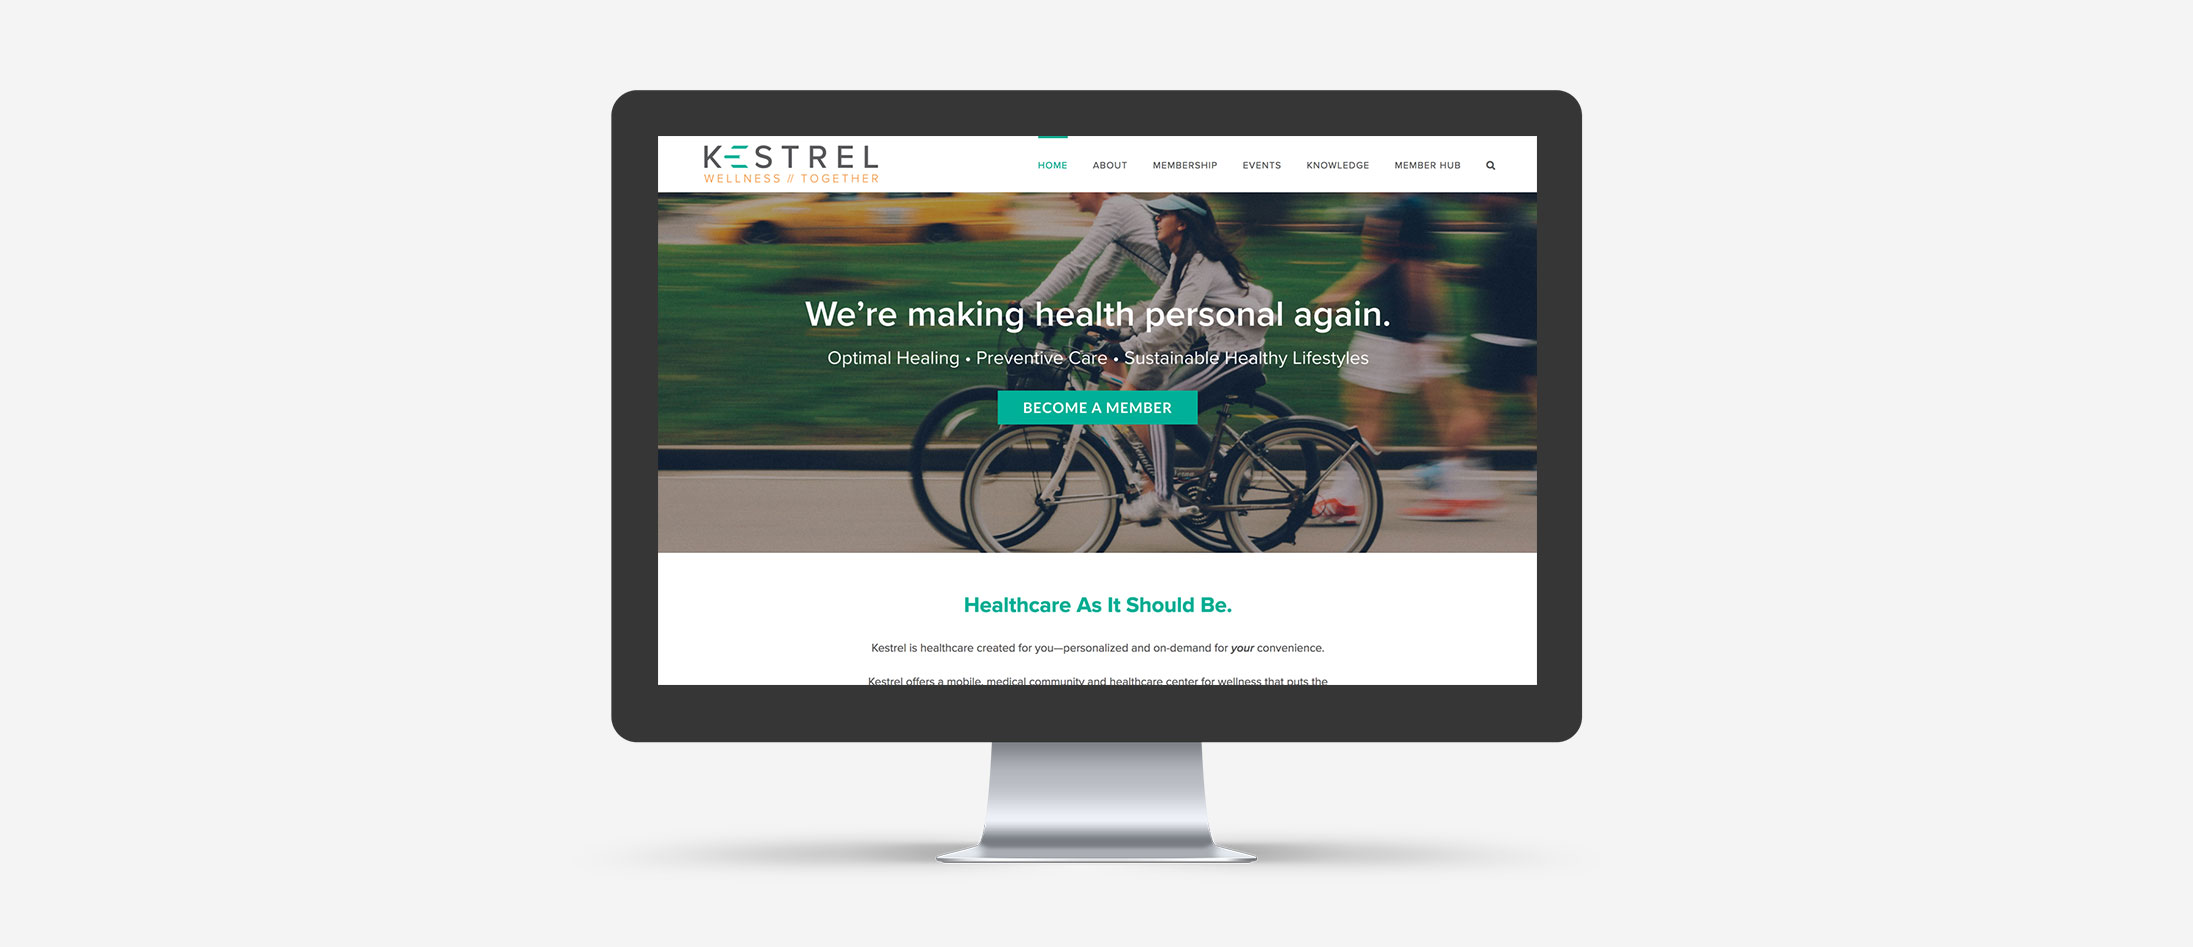 Kestrel Wellness Small Business WordPress Web Design